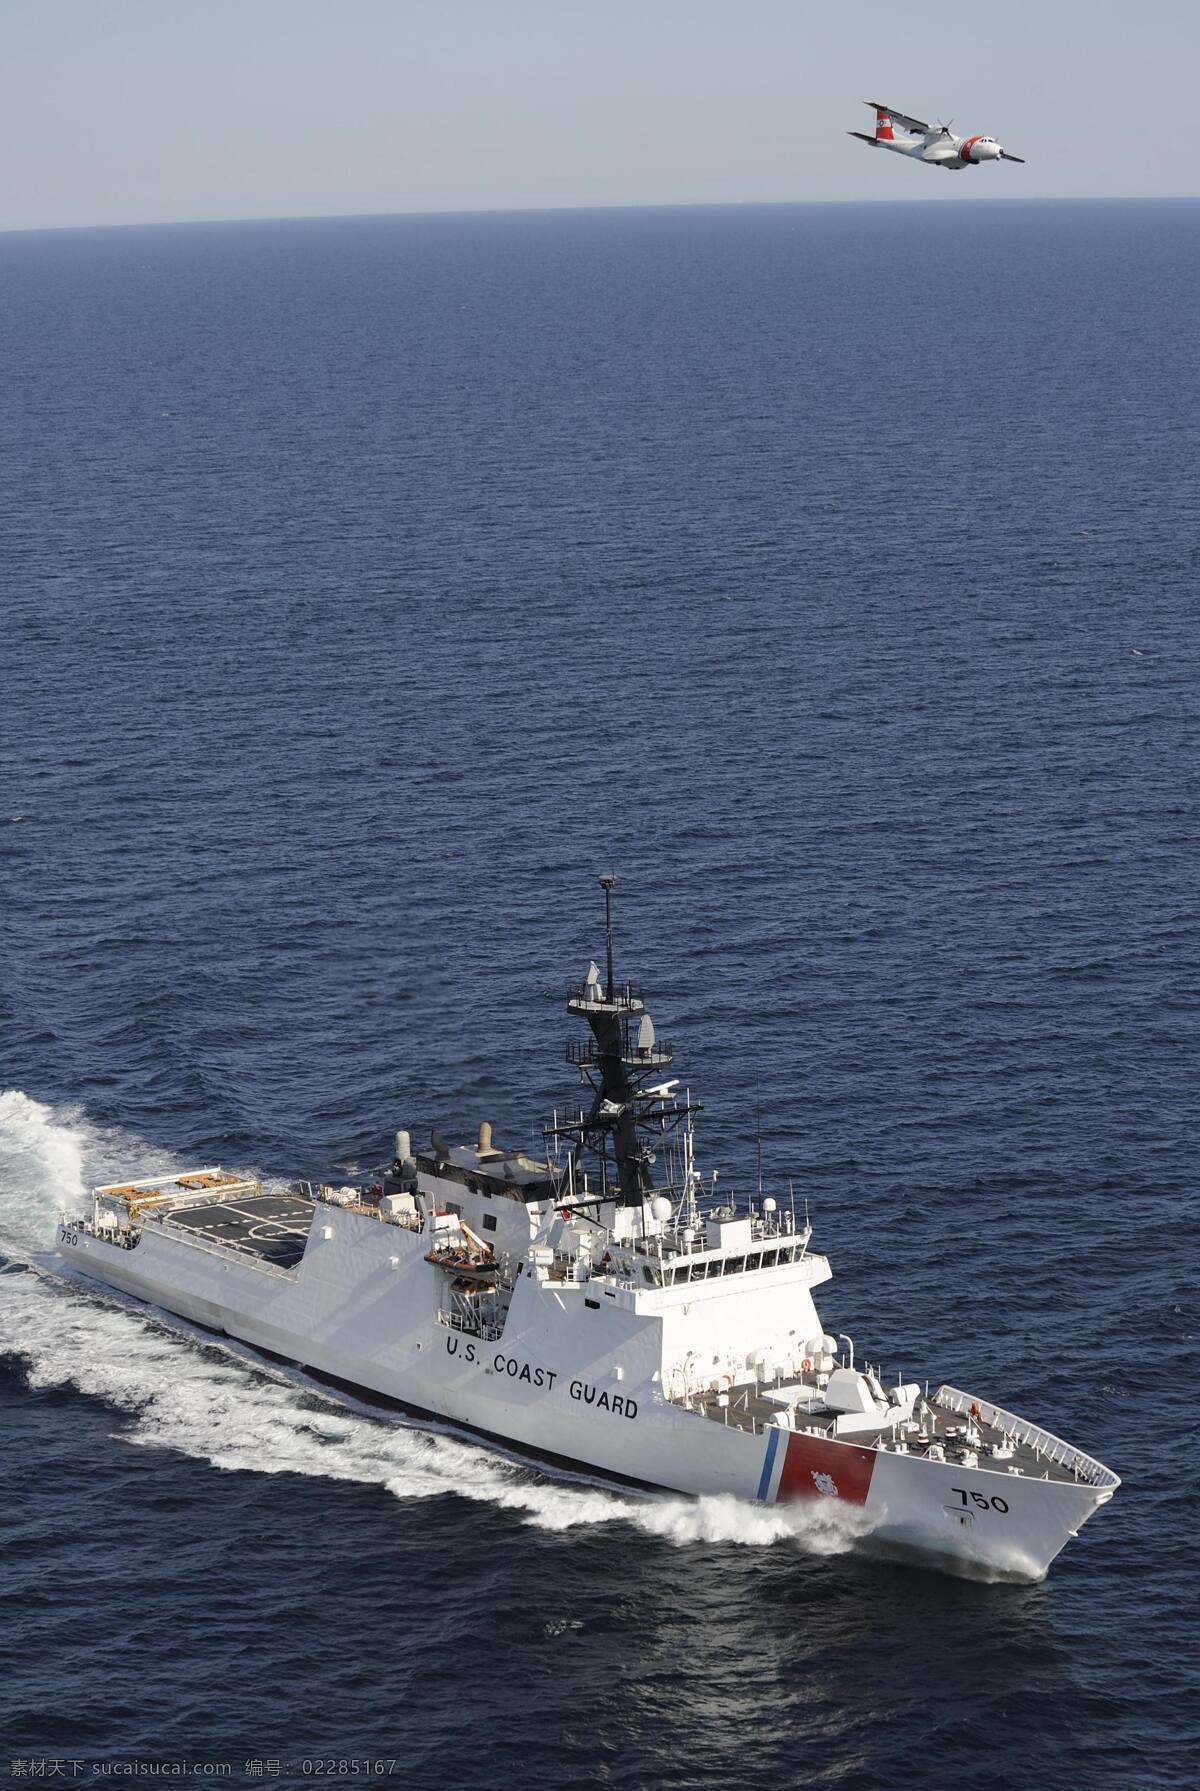 美国 国家安全 巡防 舰 海岸警卫队 火炮 海军 执法船 舰船 海洋 领海 工业 船舶 军事 军事武器 现代科技